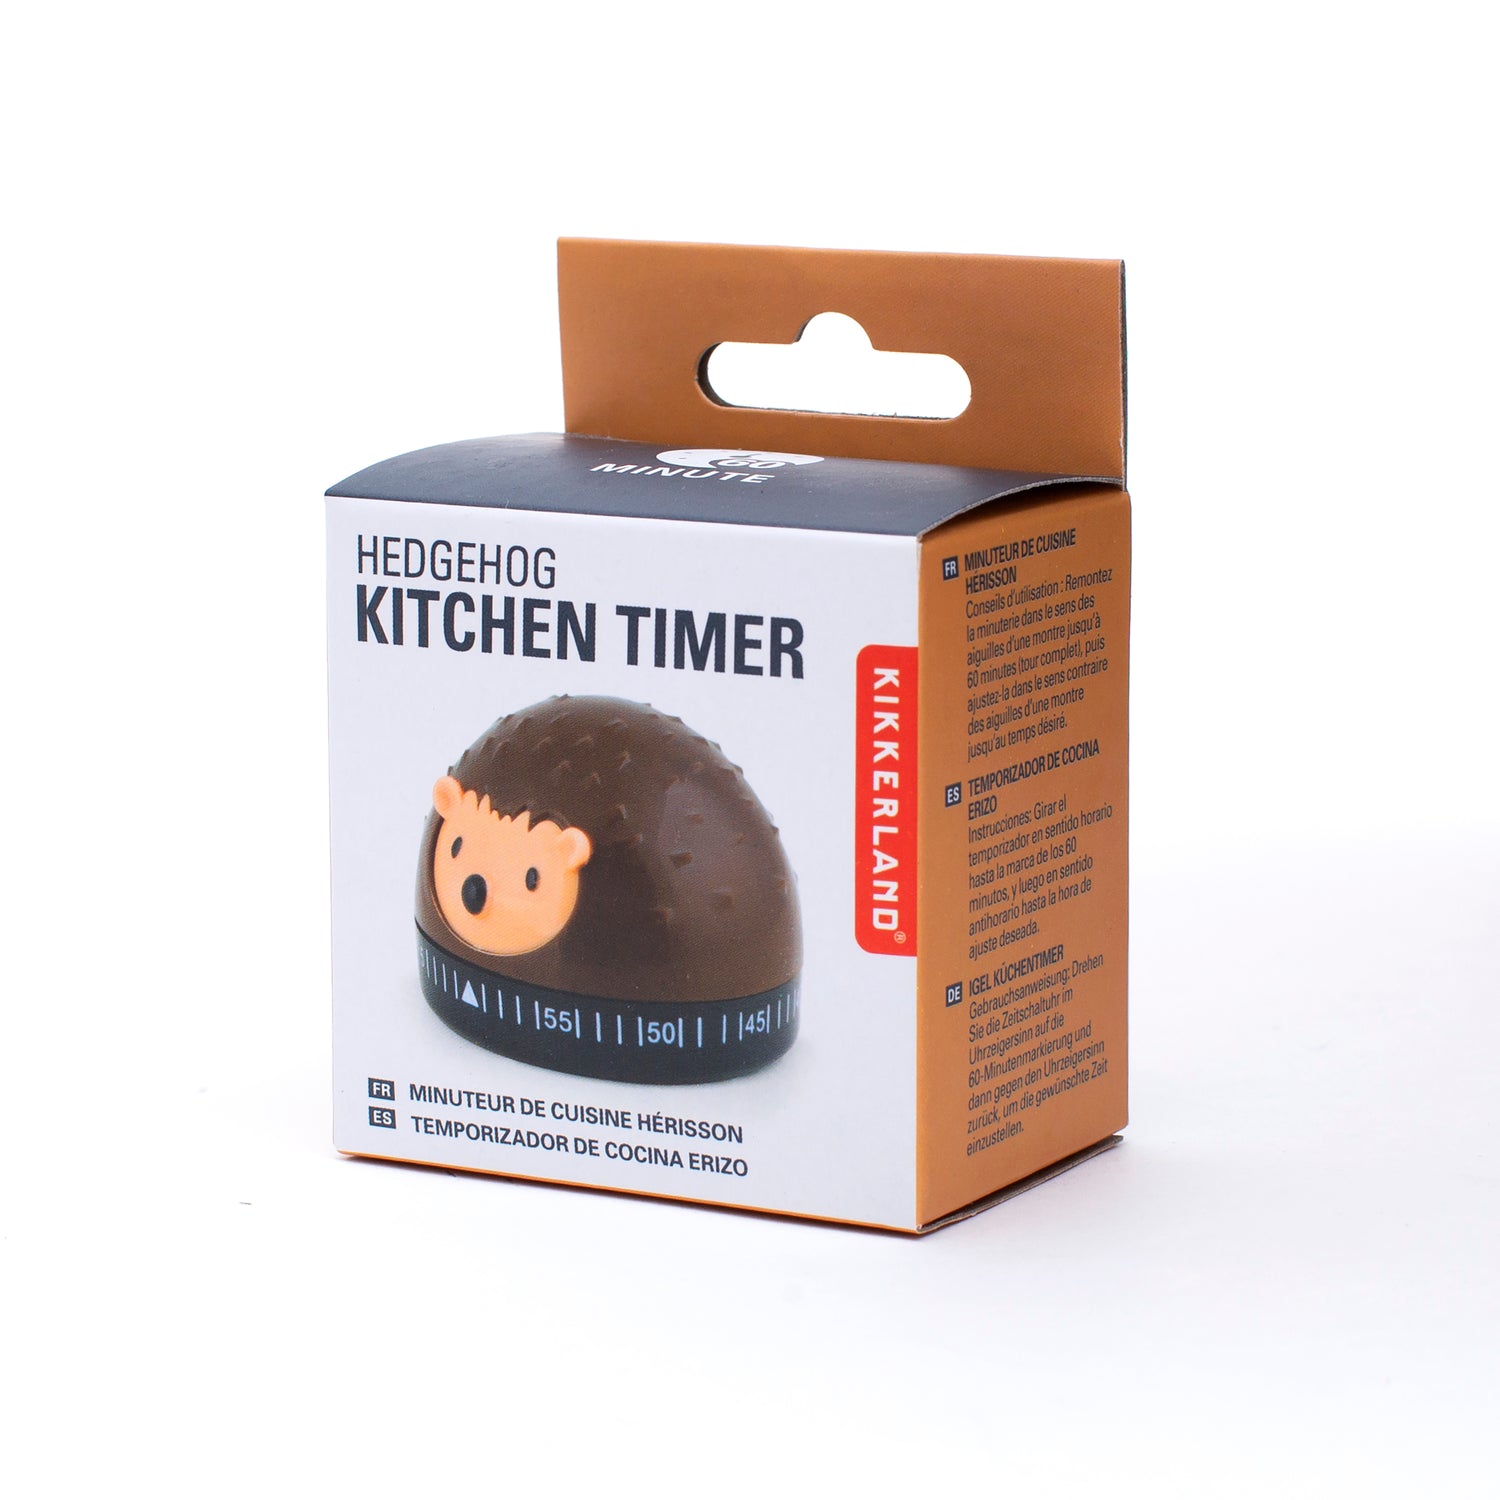 Hedgehog Kitchen Timer